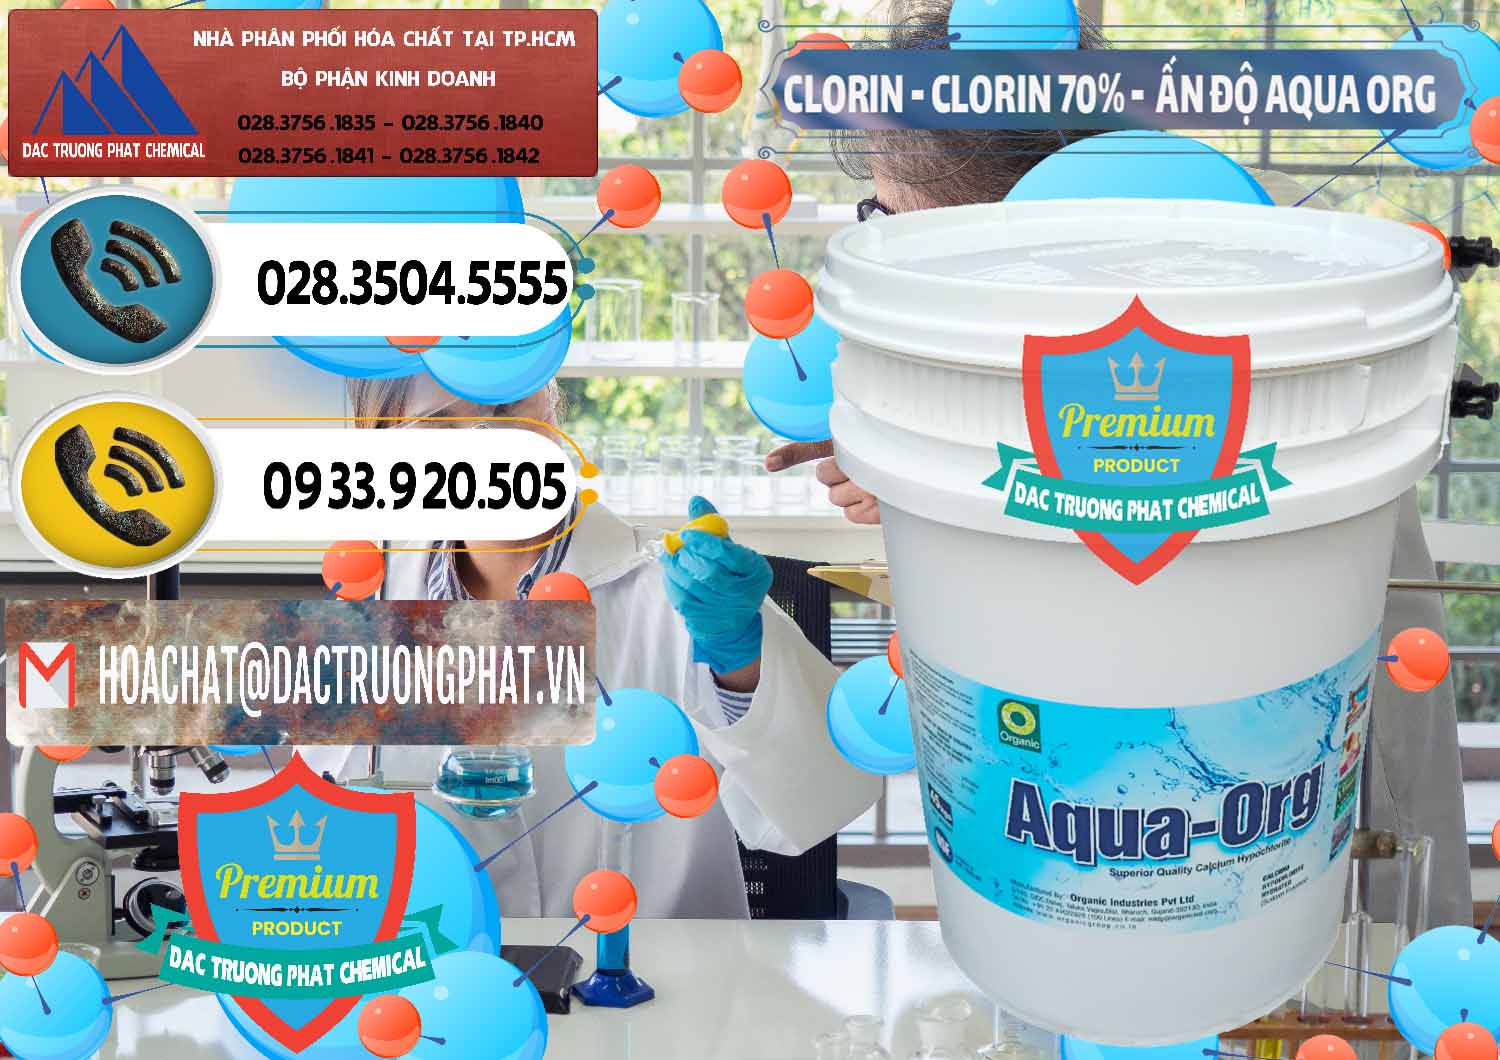 Cty bán - phân phối Chlorine – Clorin Ấn Độ Aqua ORG Organic India - 0051 - Cty bán _ phân phối hóa chất tại TP.HCM - hoachatdetnhuom.vn